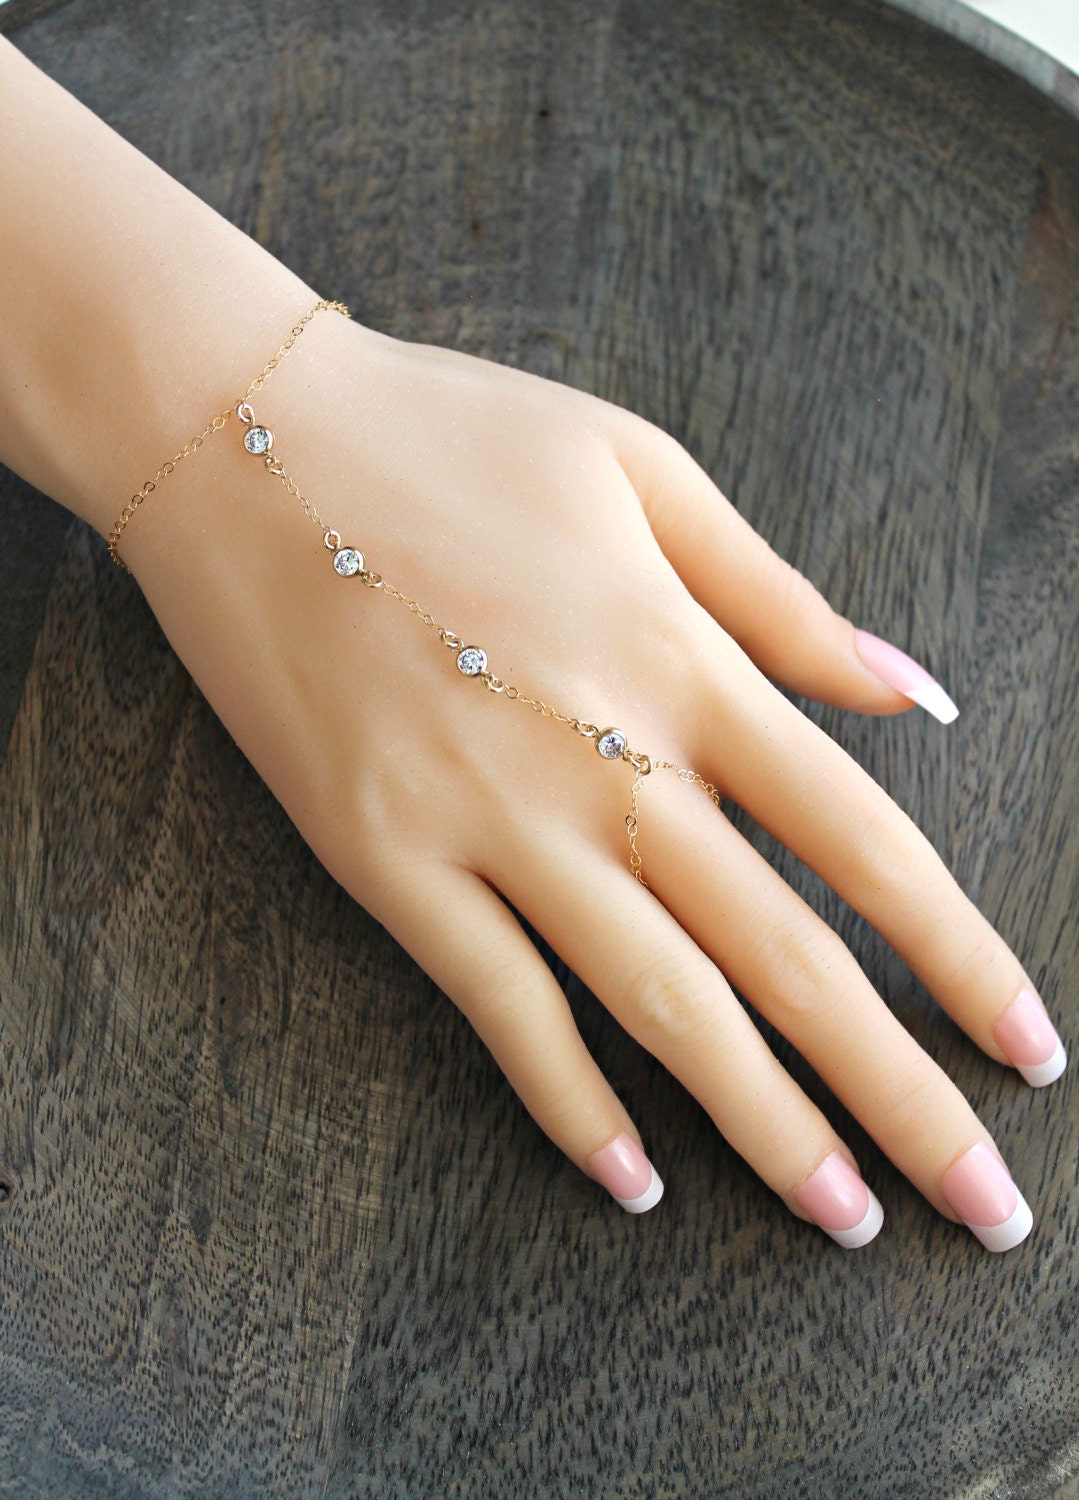 Women Bracelet Bangle Finger Ring Harness Hand Chain | eBay